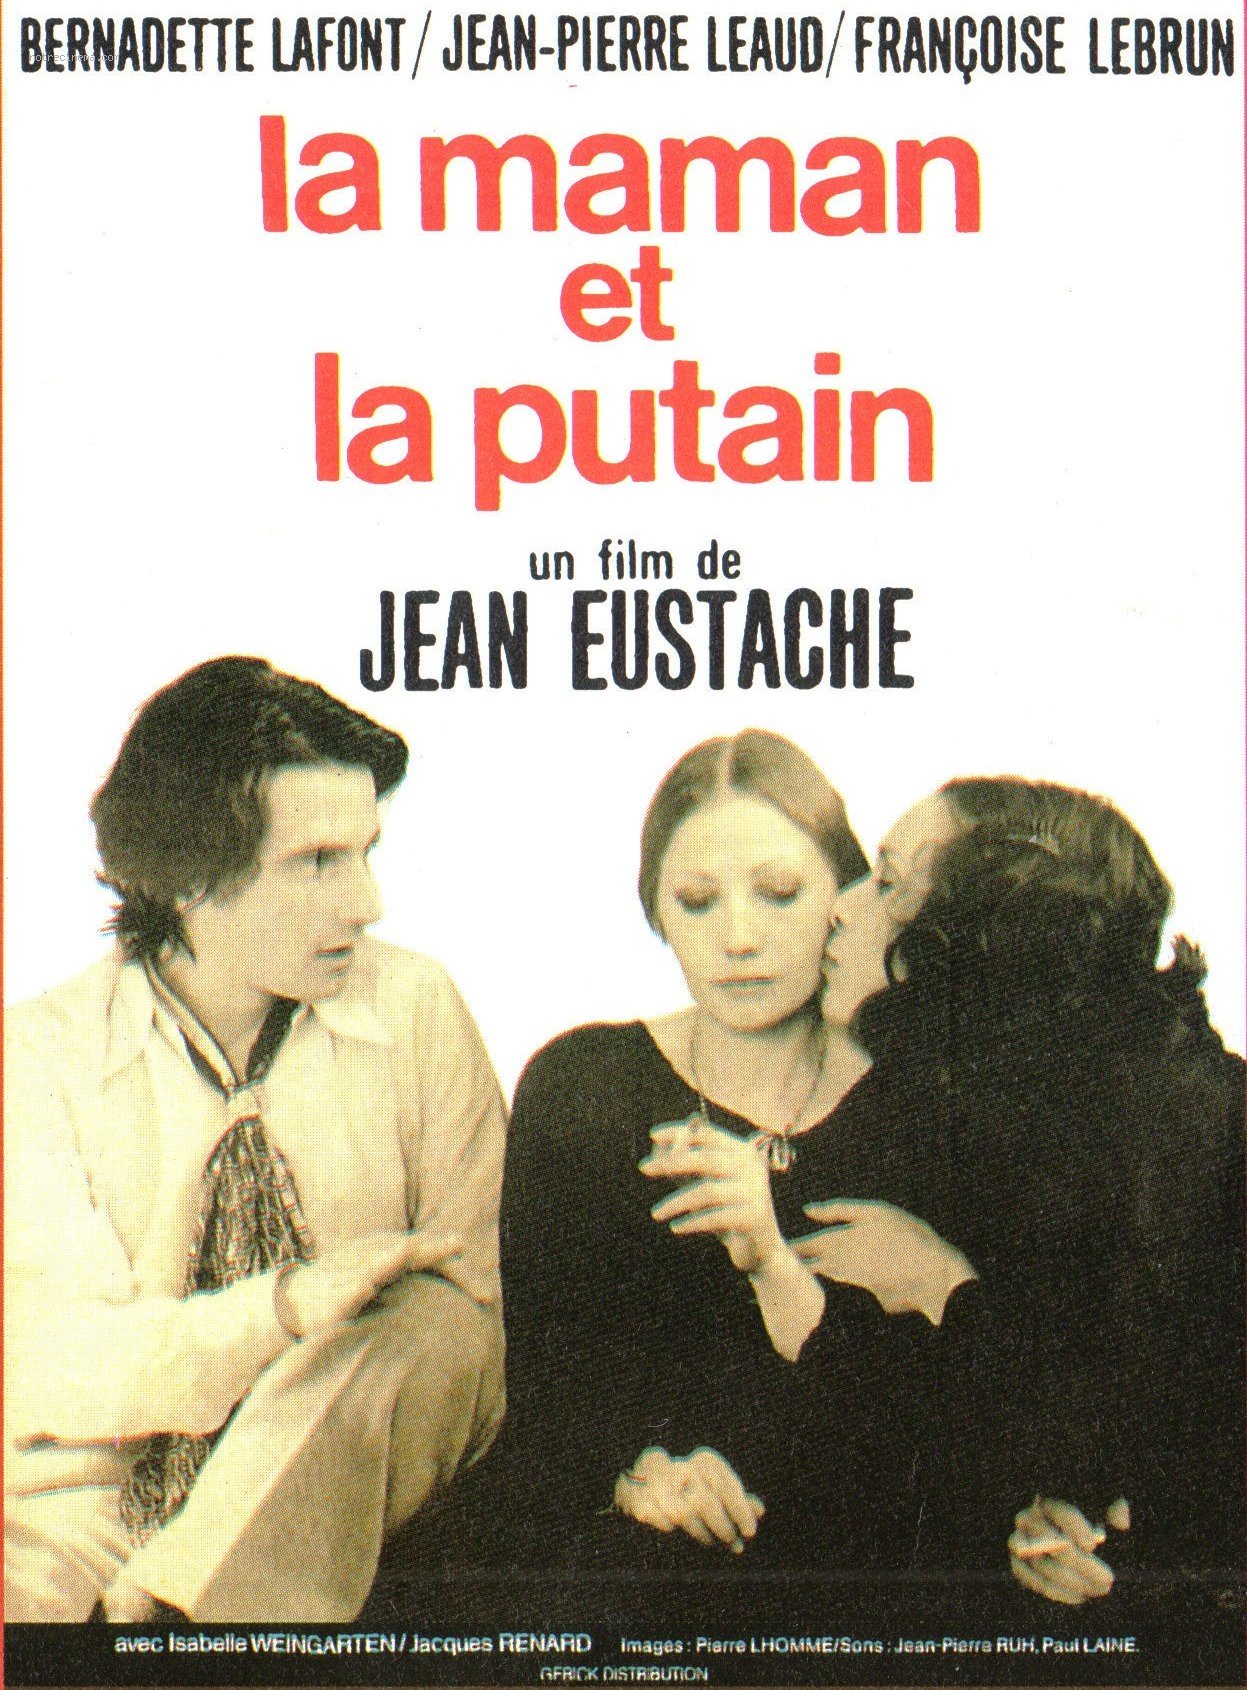 Poster of the movie La maman et la putain